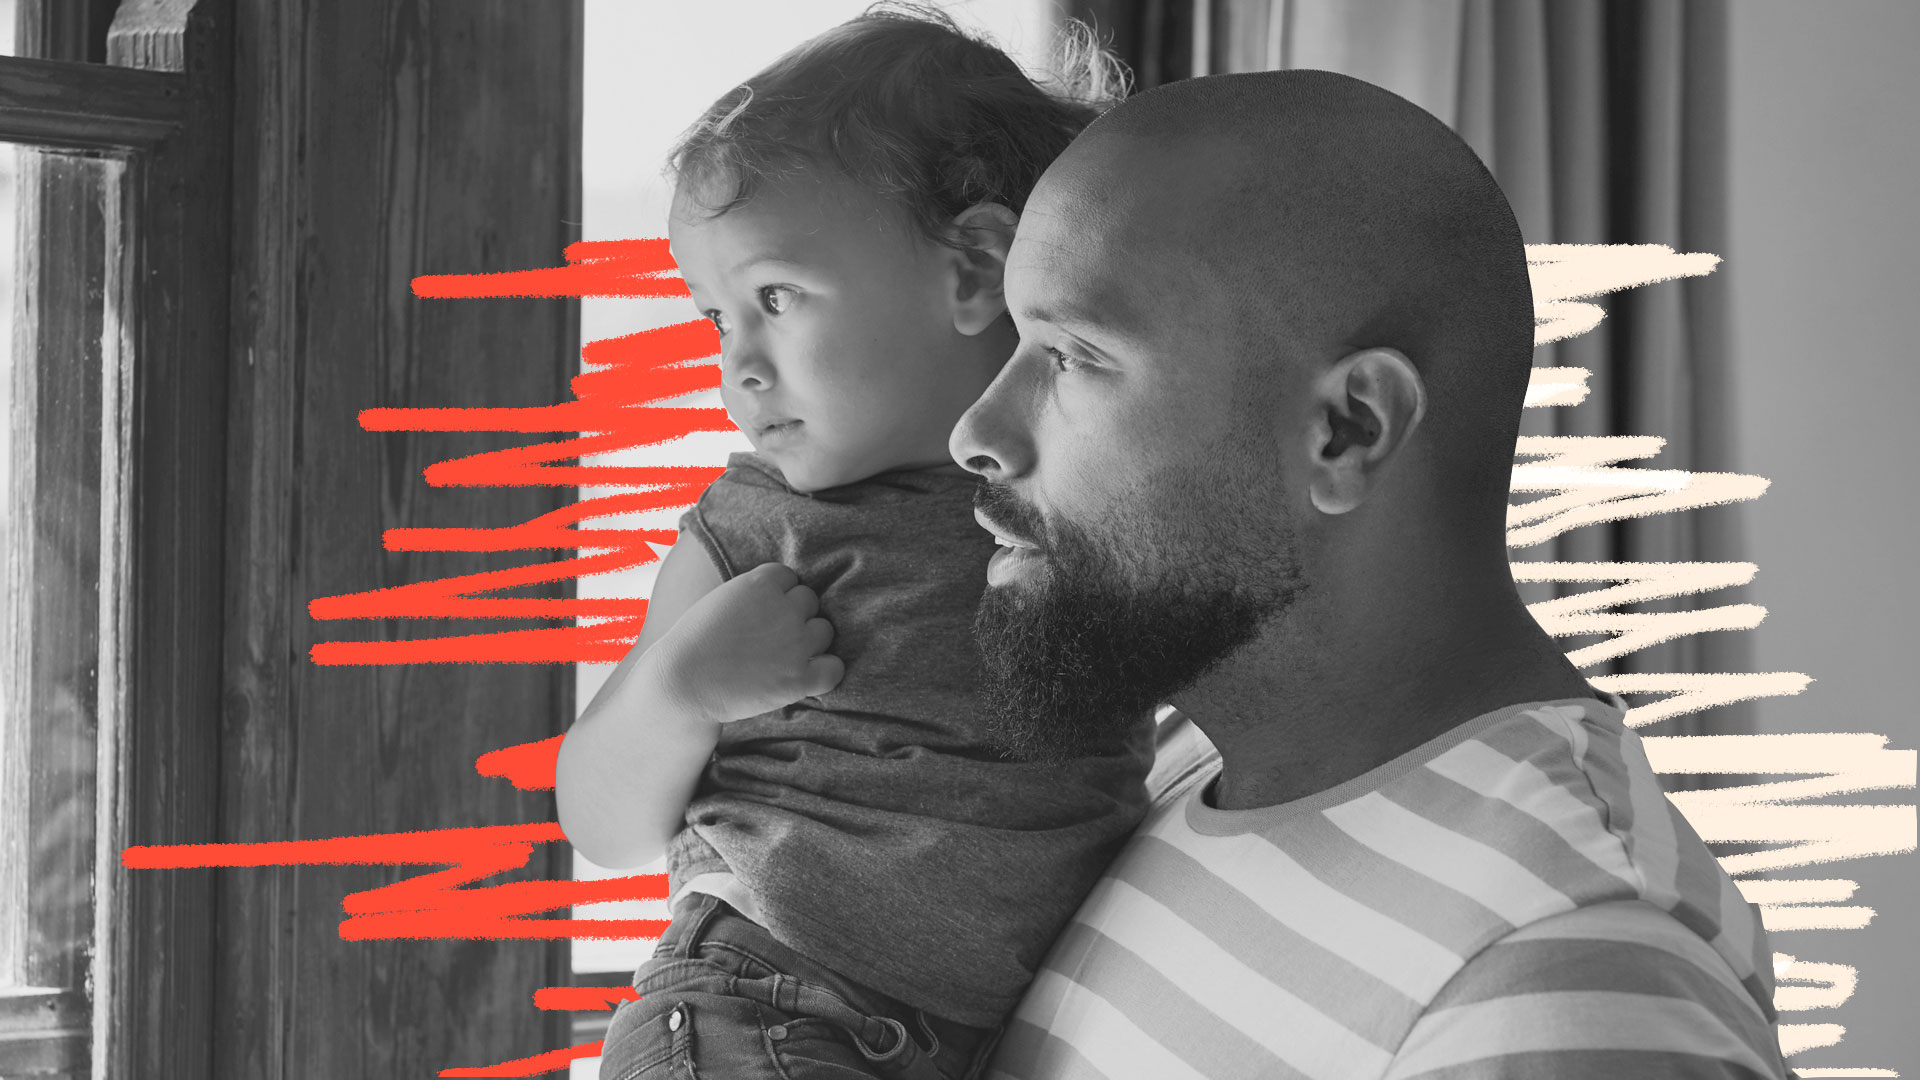 Imagem de um homem negro com barba e careca. Ele está olhando para uma janela e segura uma criança (que tem pouco mais de 1 ano) no colo. Ambos olham para a janela.